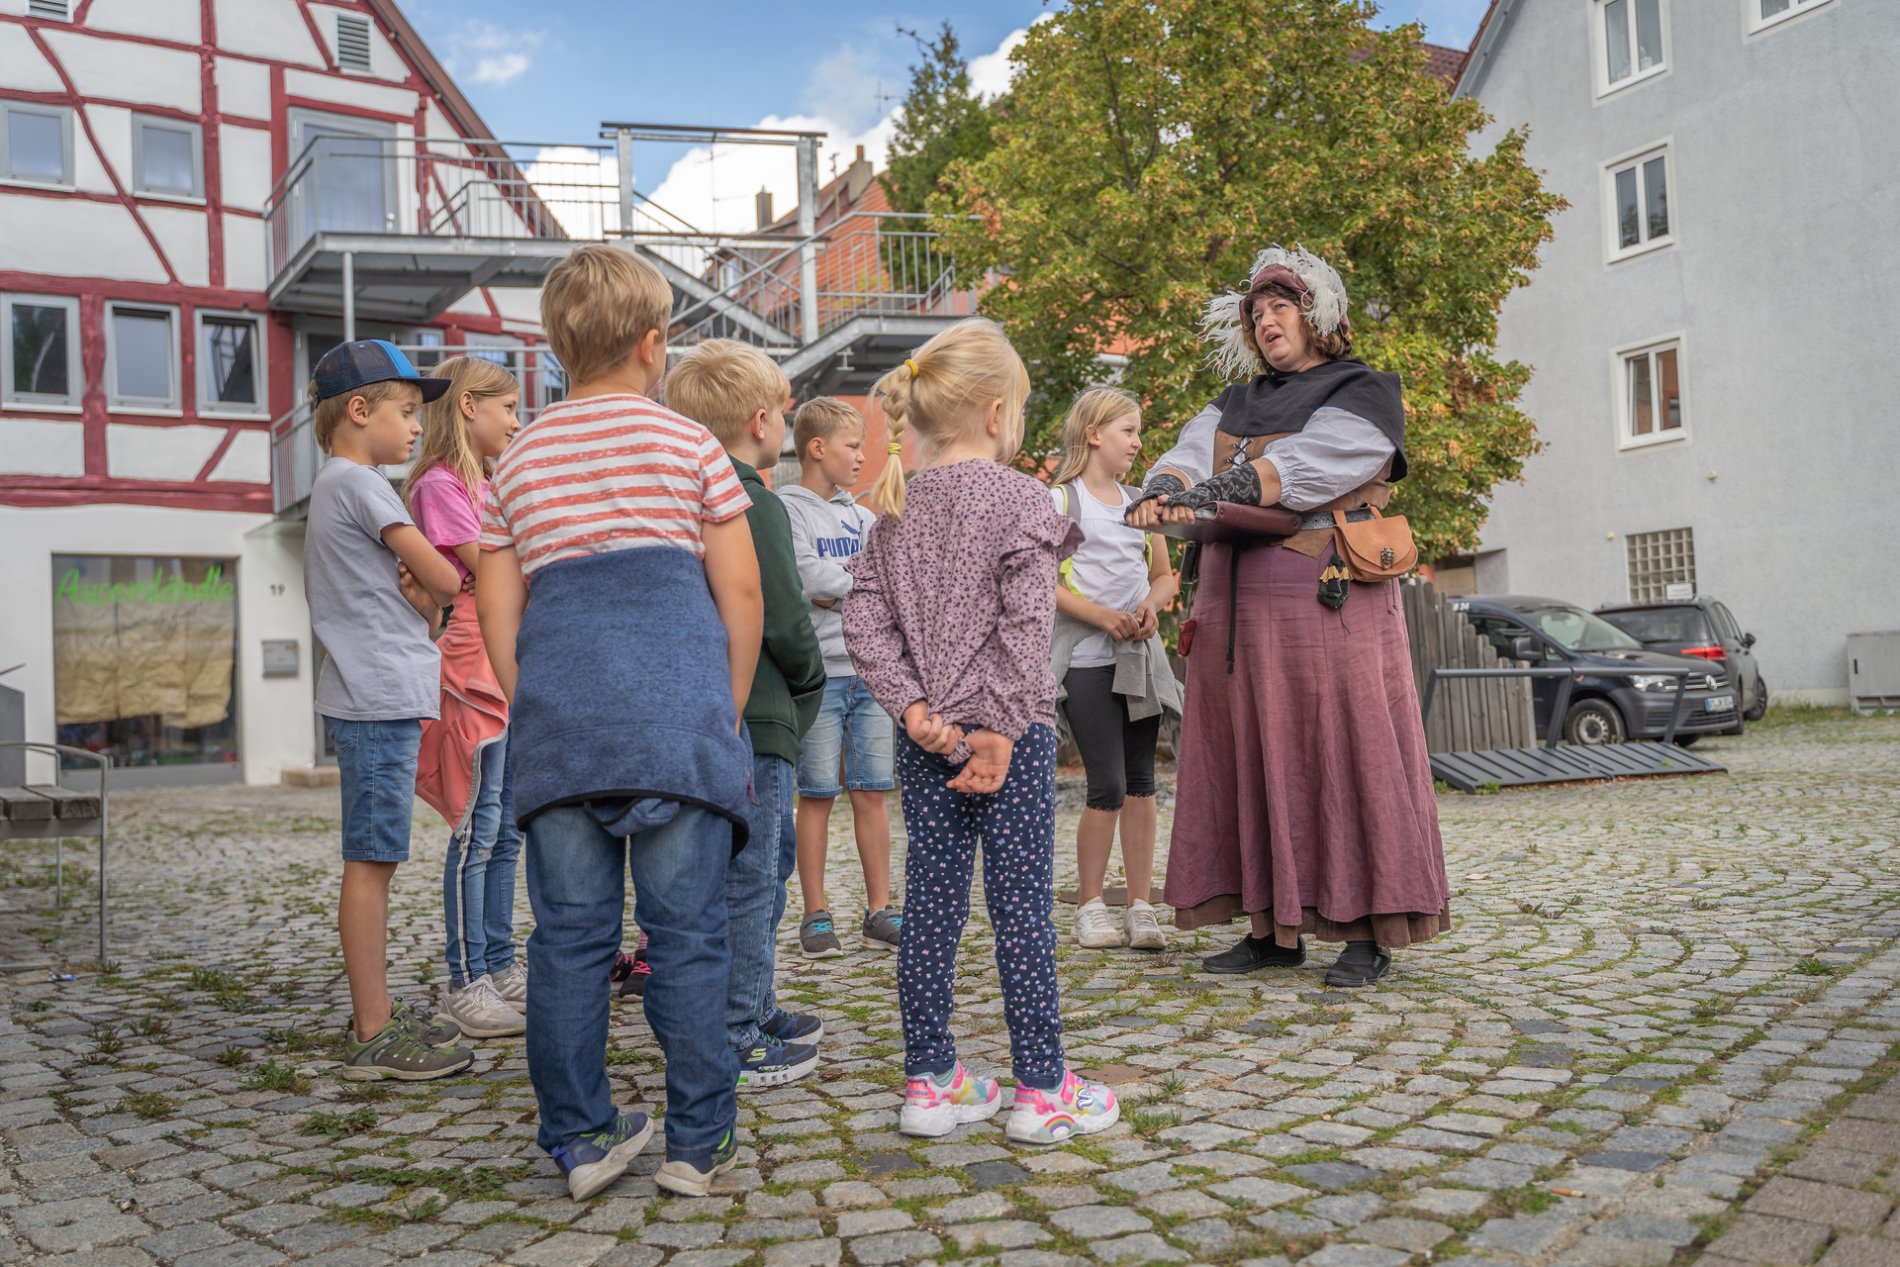 Kinderführung mit dem Marktweib Marga in Münsingen im Biosphärengebiet Schwäbische Alb. Eine Person in einem mittelalterlichen Kostüm steht neben mehreren Kindern und erzählt etwas. Im Hintergrund sind Häuser und Bäume.